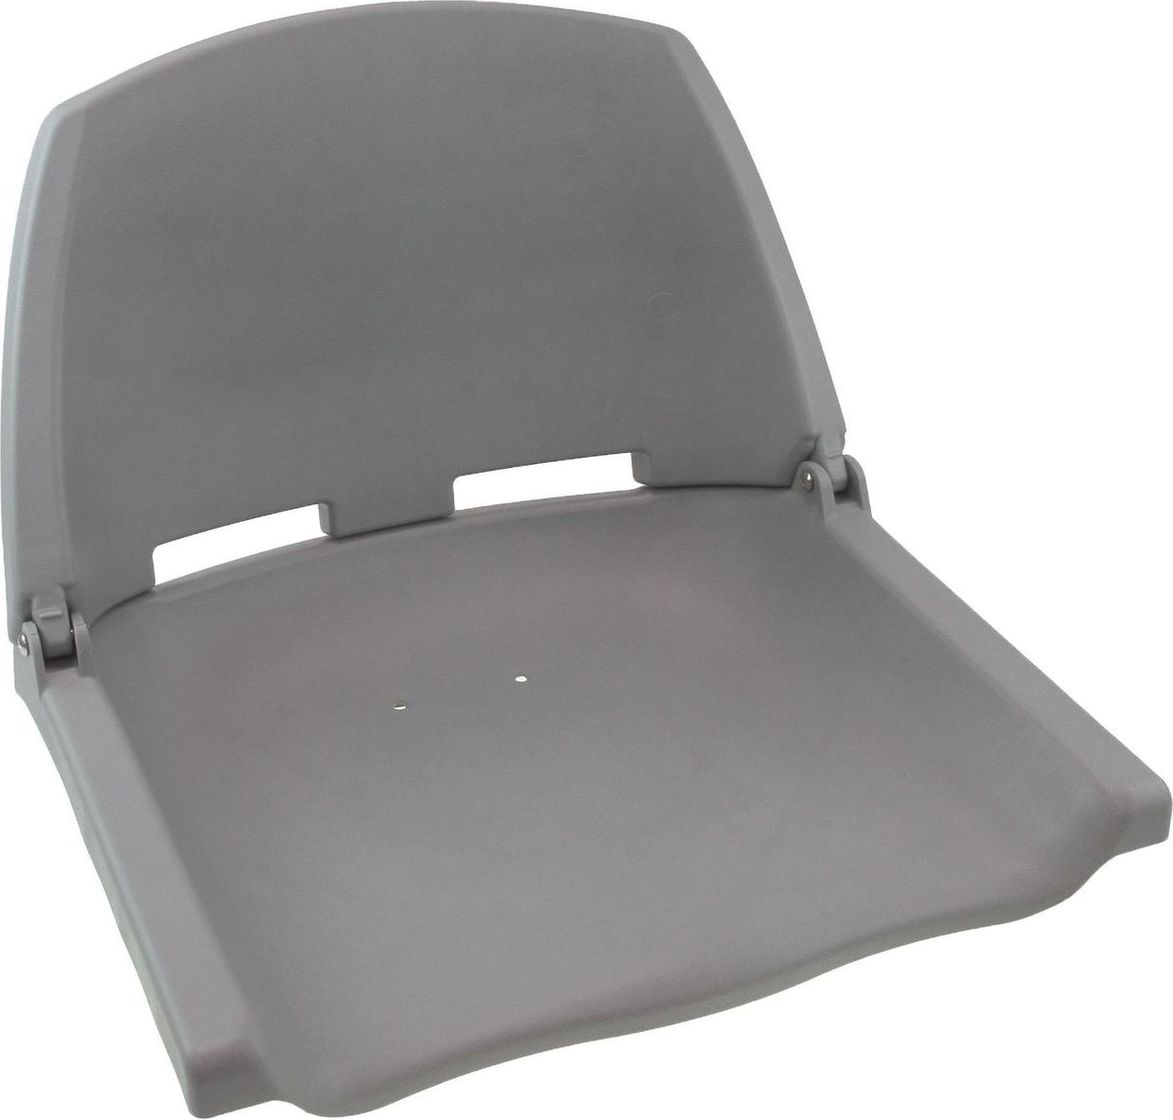 Кресло пластиковое серое (упаковка из 3 шт.) C12503G_pkg_3